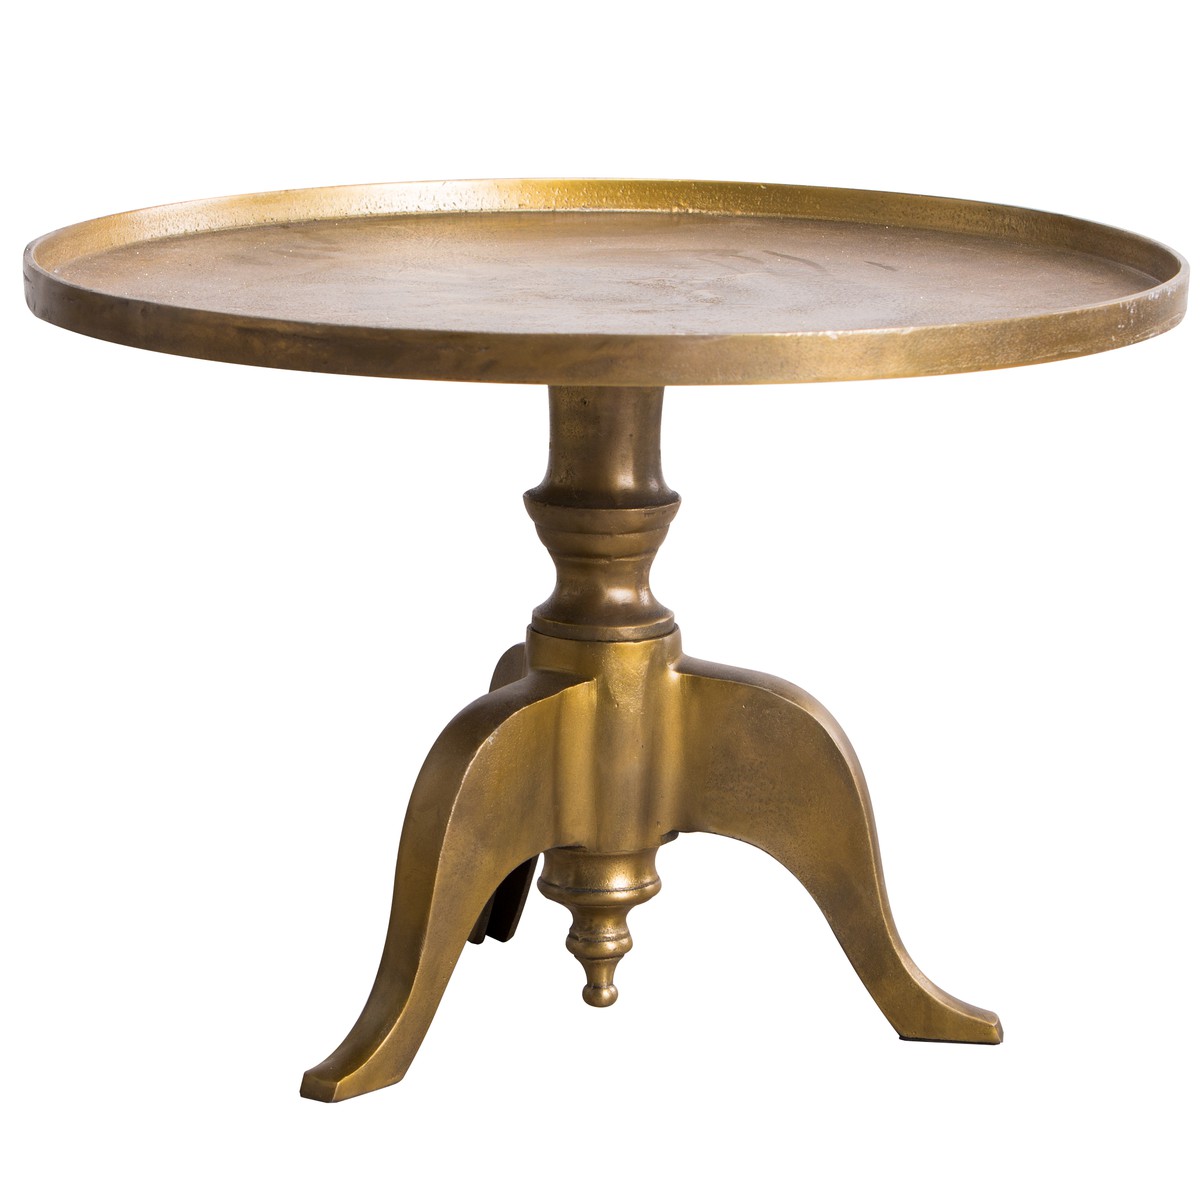  Merveille Table d'appoint ronde Merveille Brun bronze 65x65x34cm